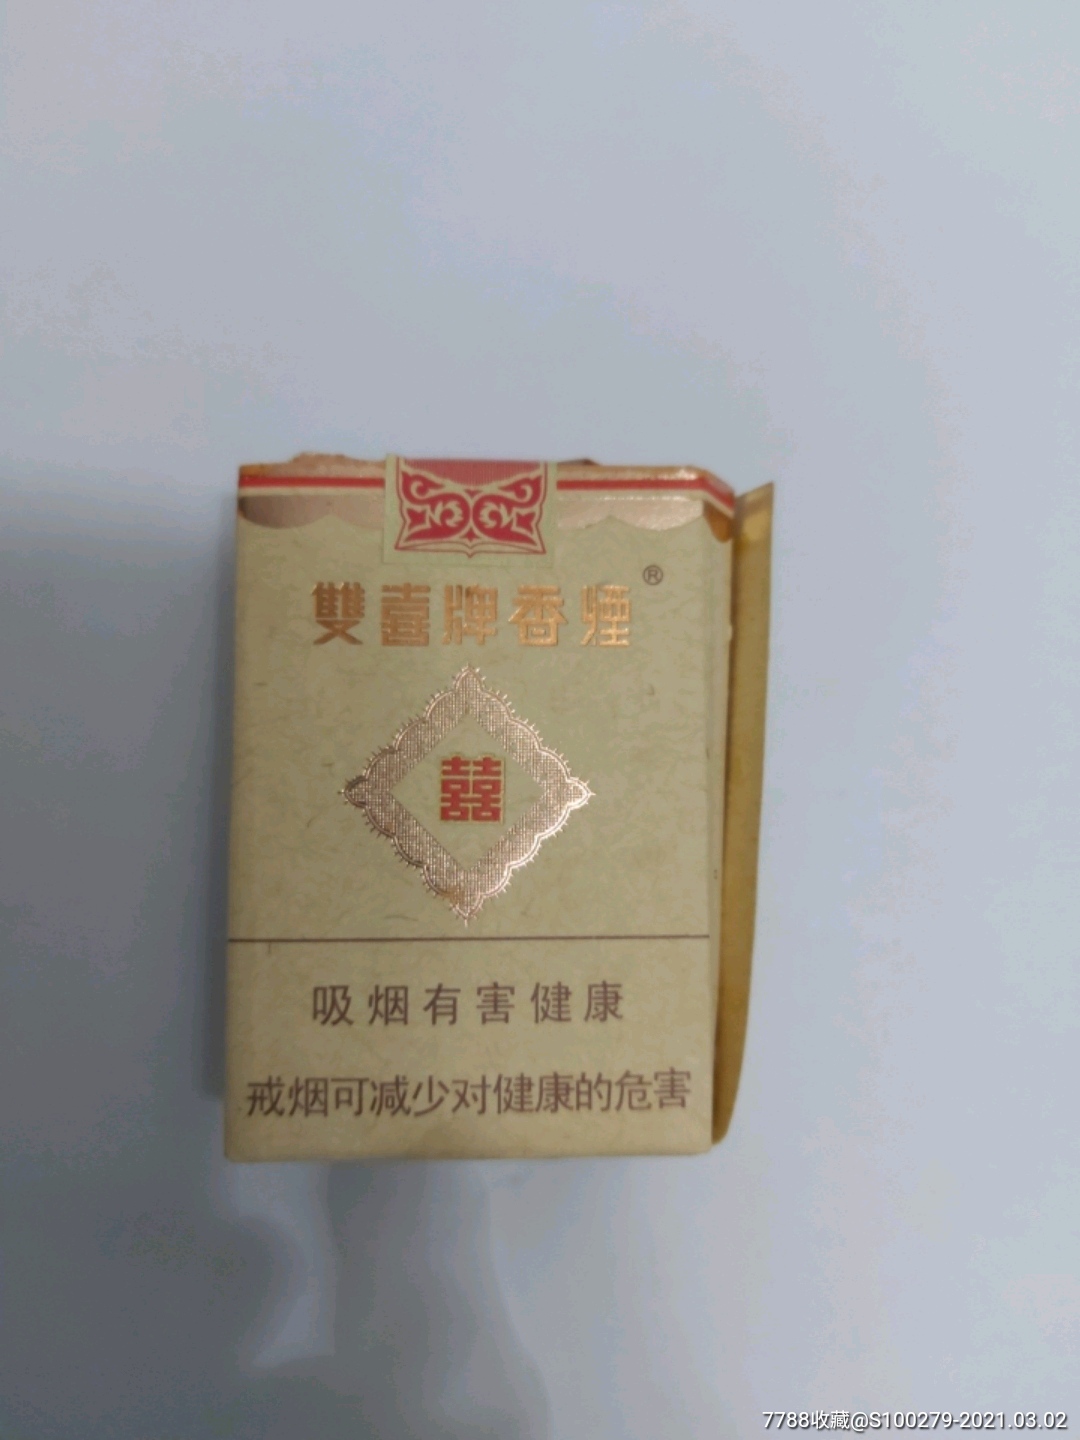 双喜牌香烟1906珍藏图片